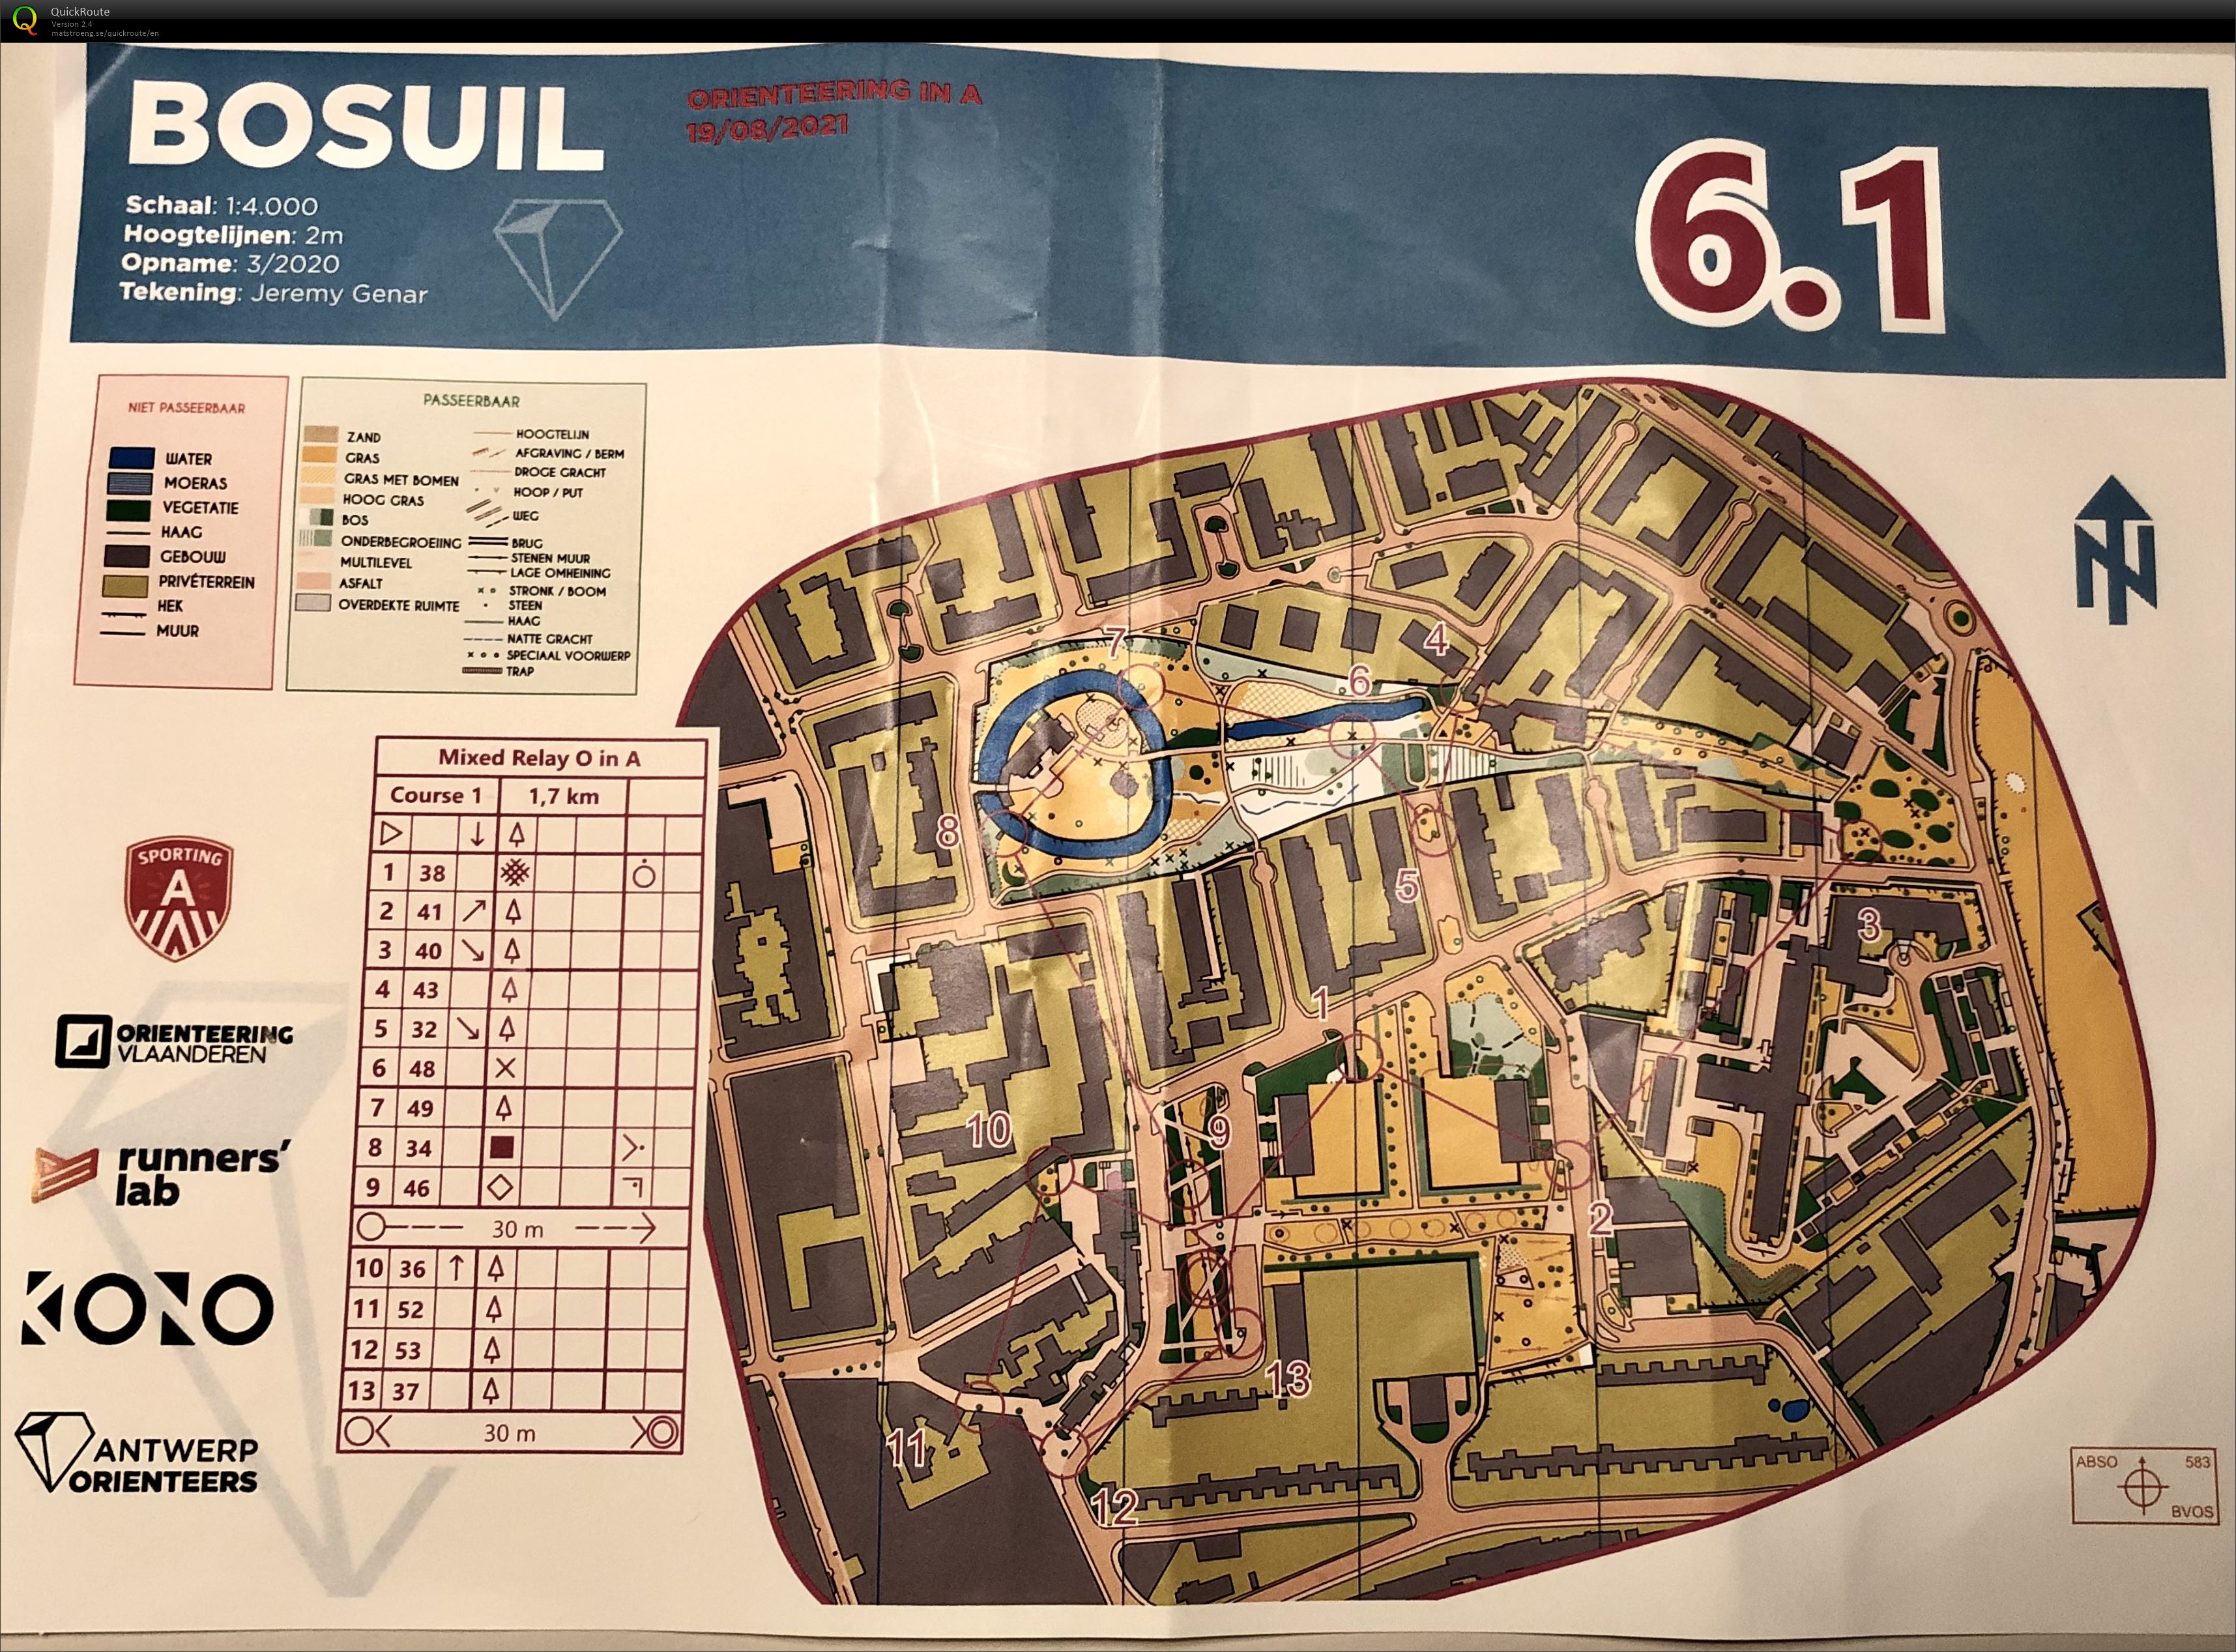 Antwerp Orienteers - Team Relay Bosuil 6.1 (19-08-2021)